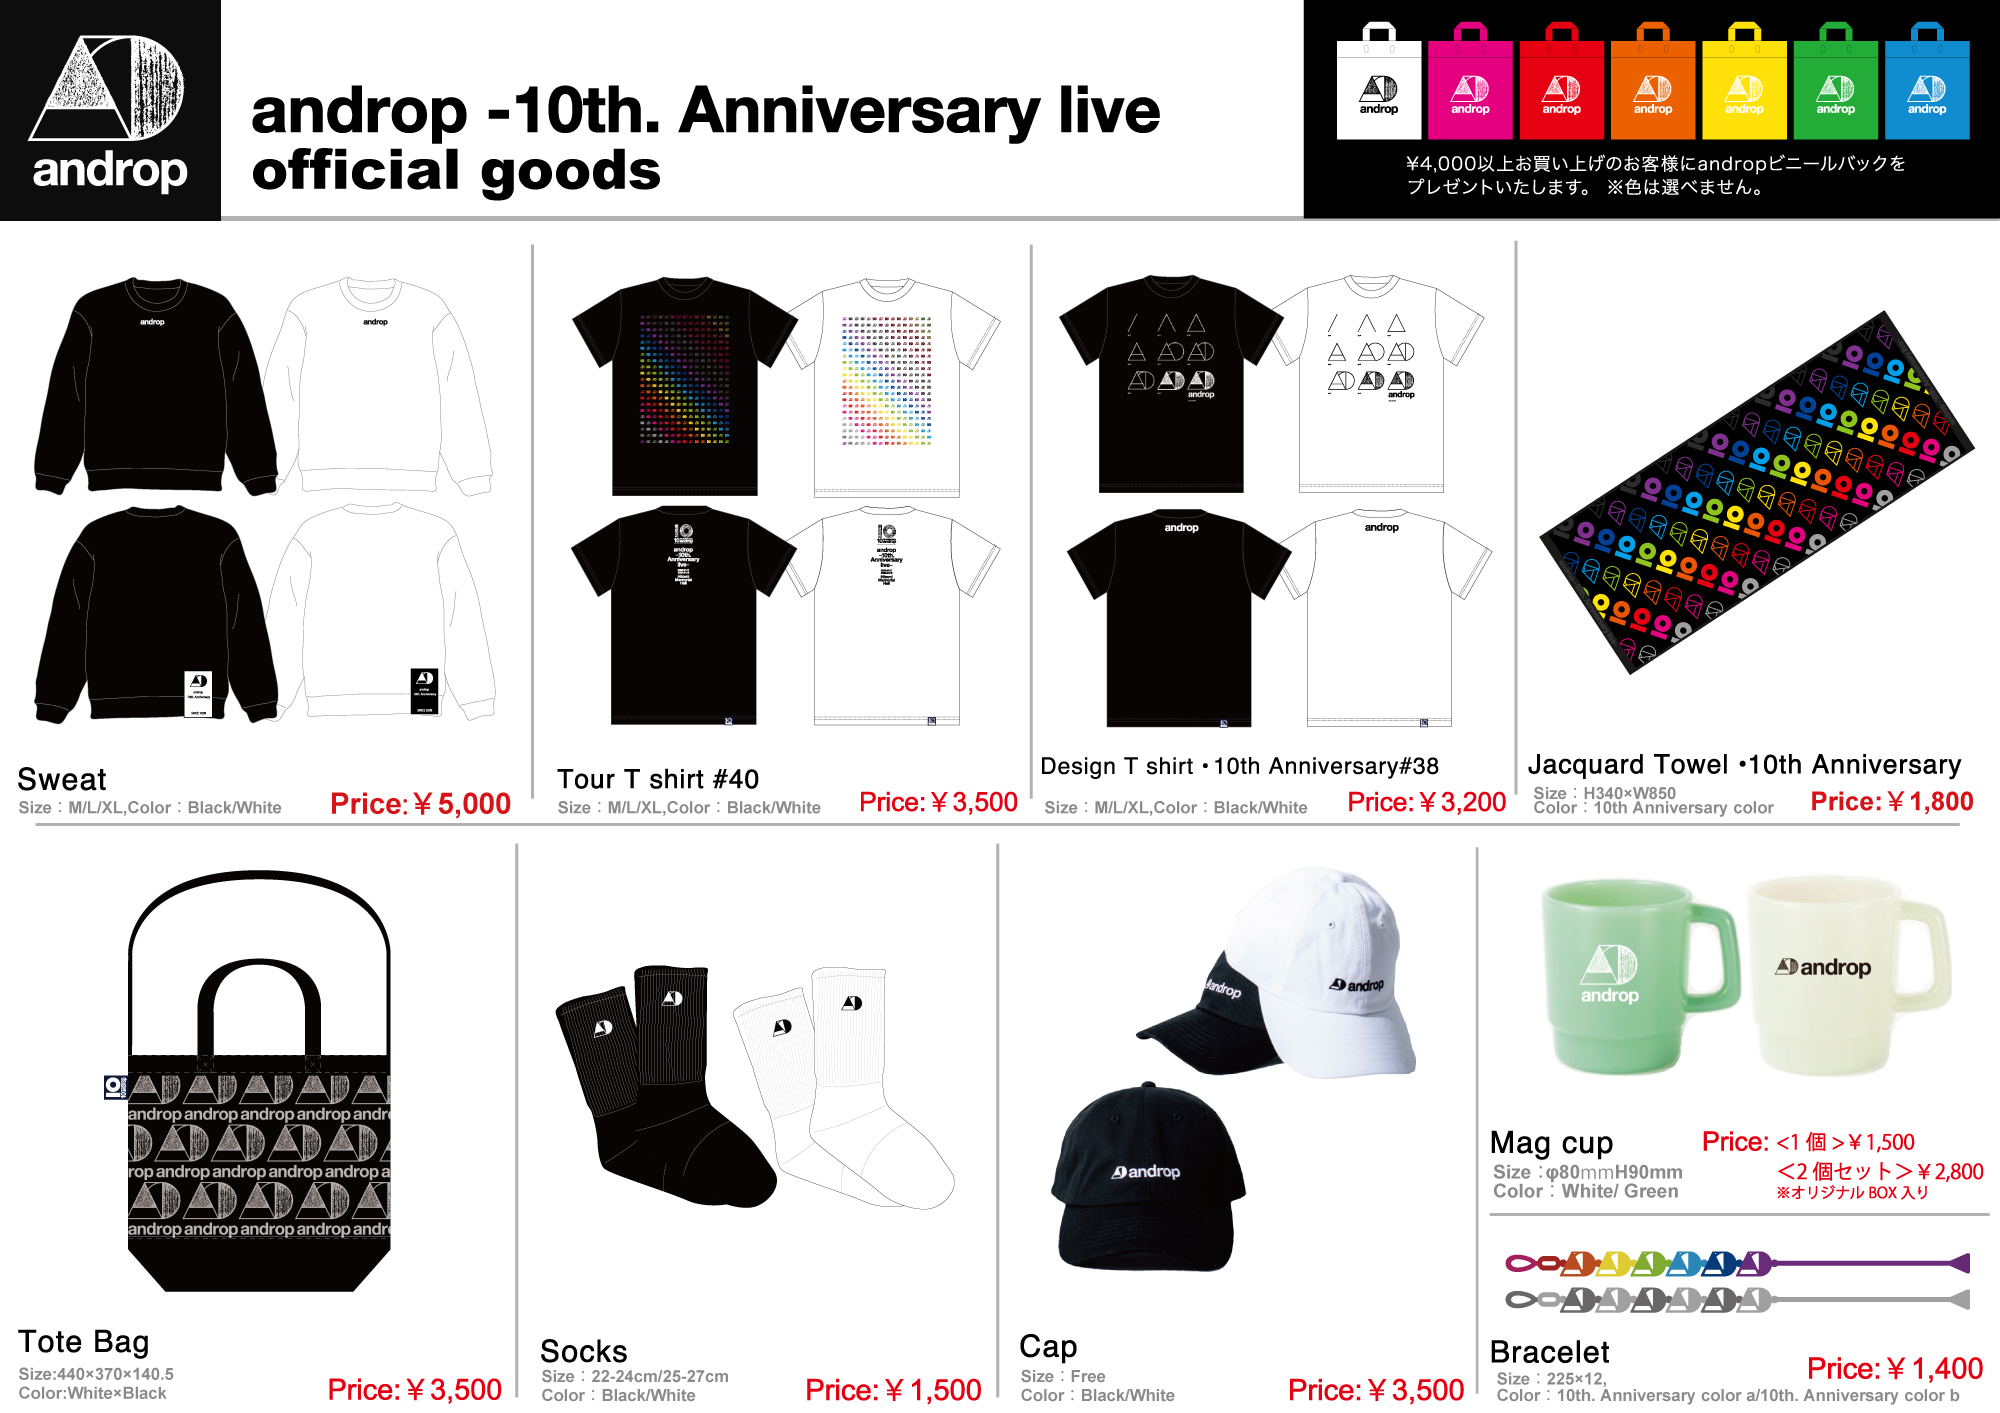 Androp 10th Anniversary Live グッズラインナップ 先行販売時間のお知らせ 01 08 Posted